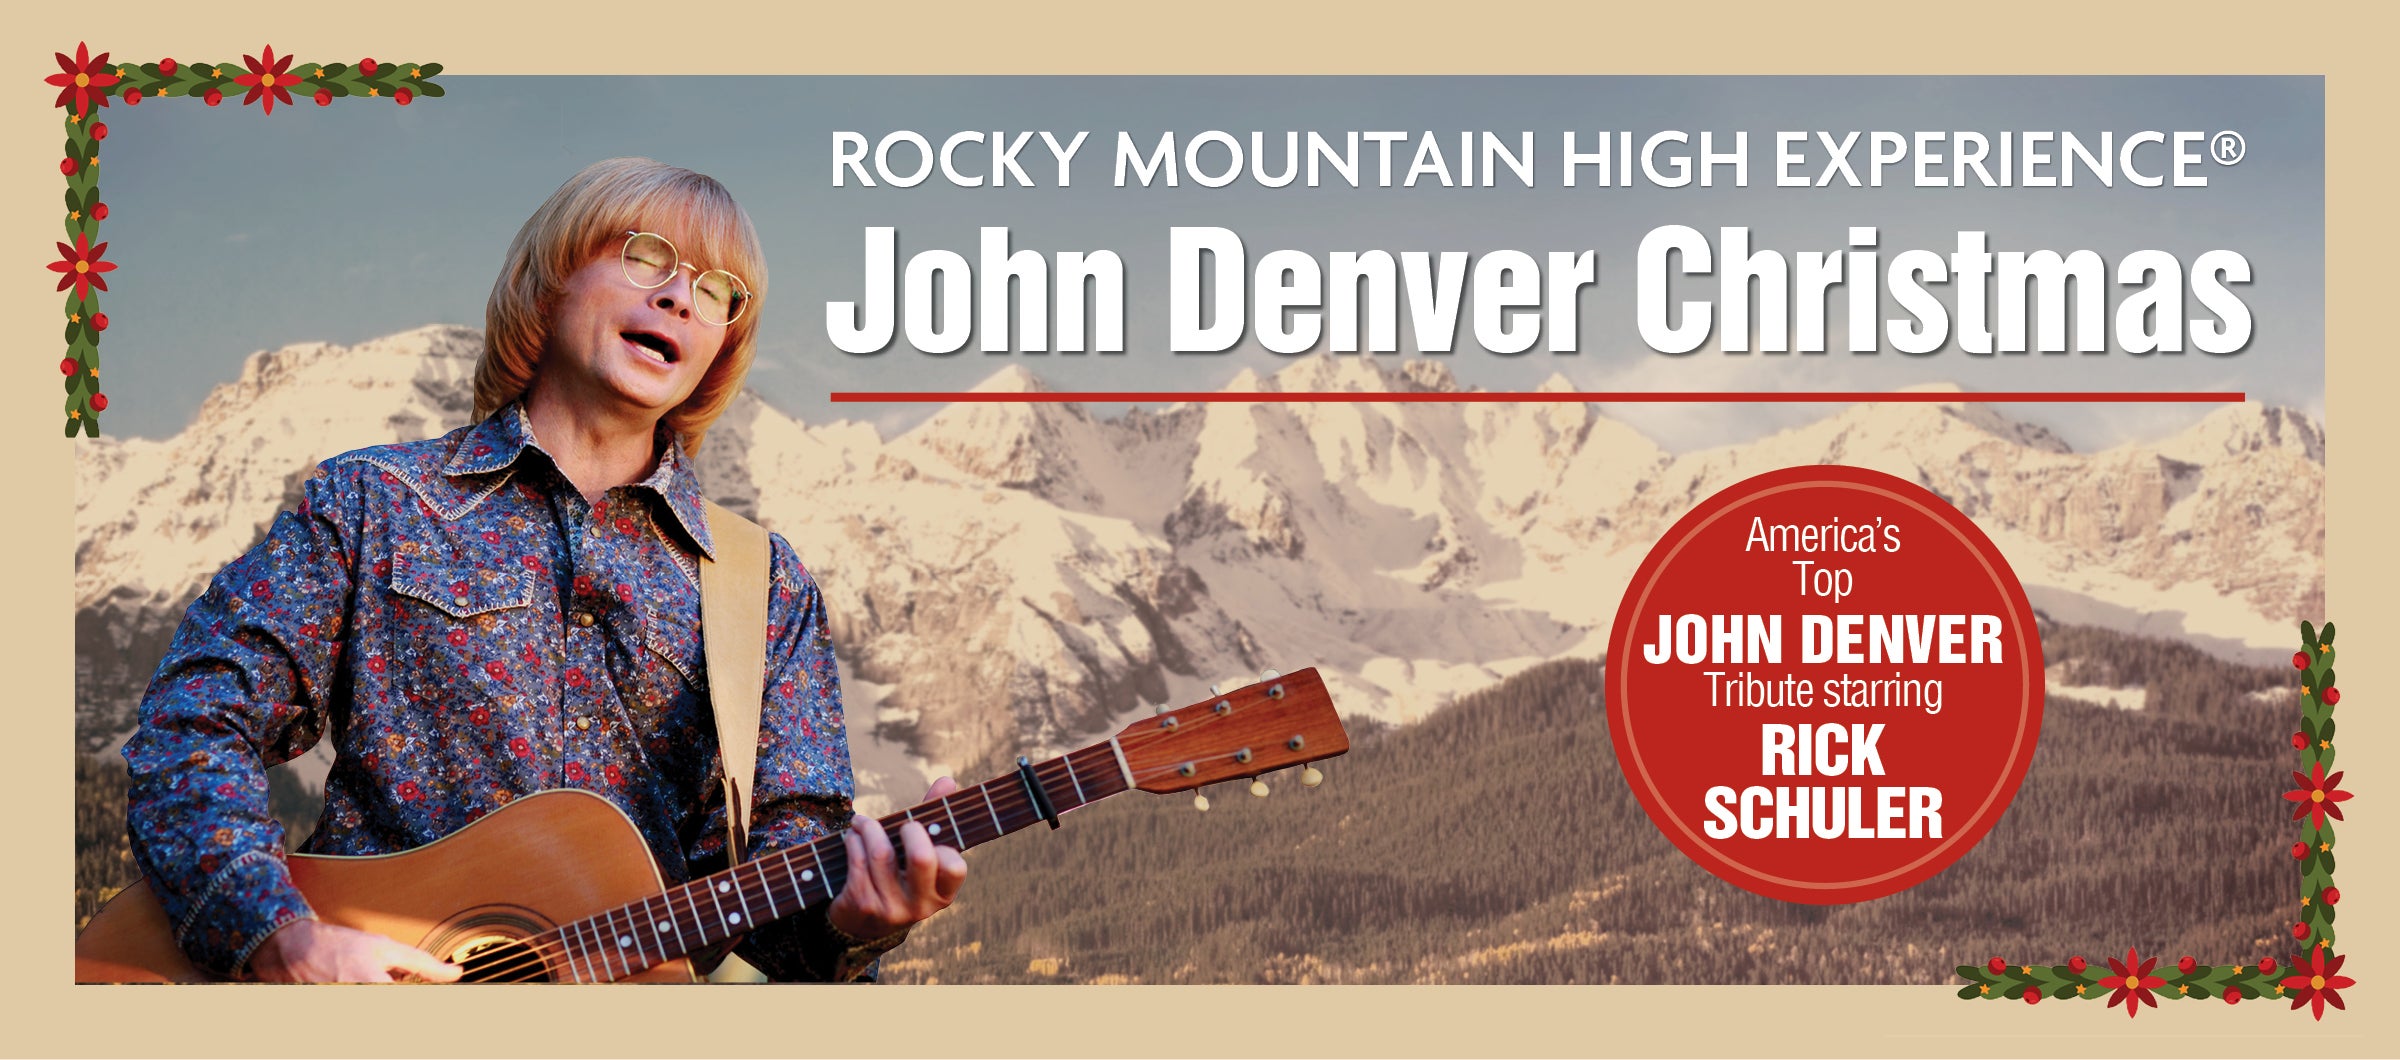 Rocky Mountain High, John Denver